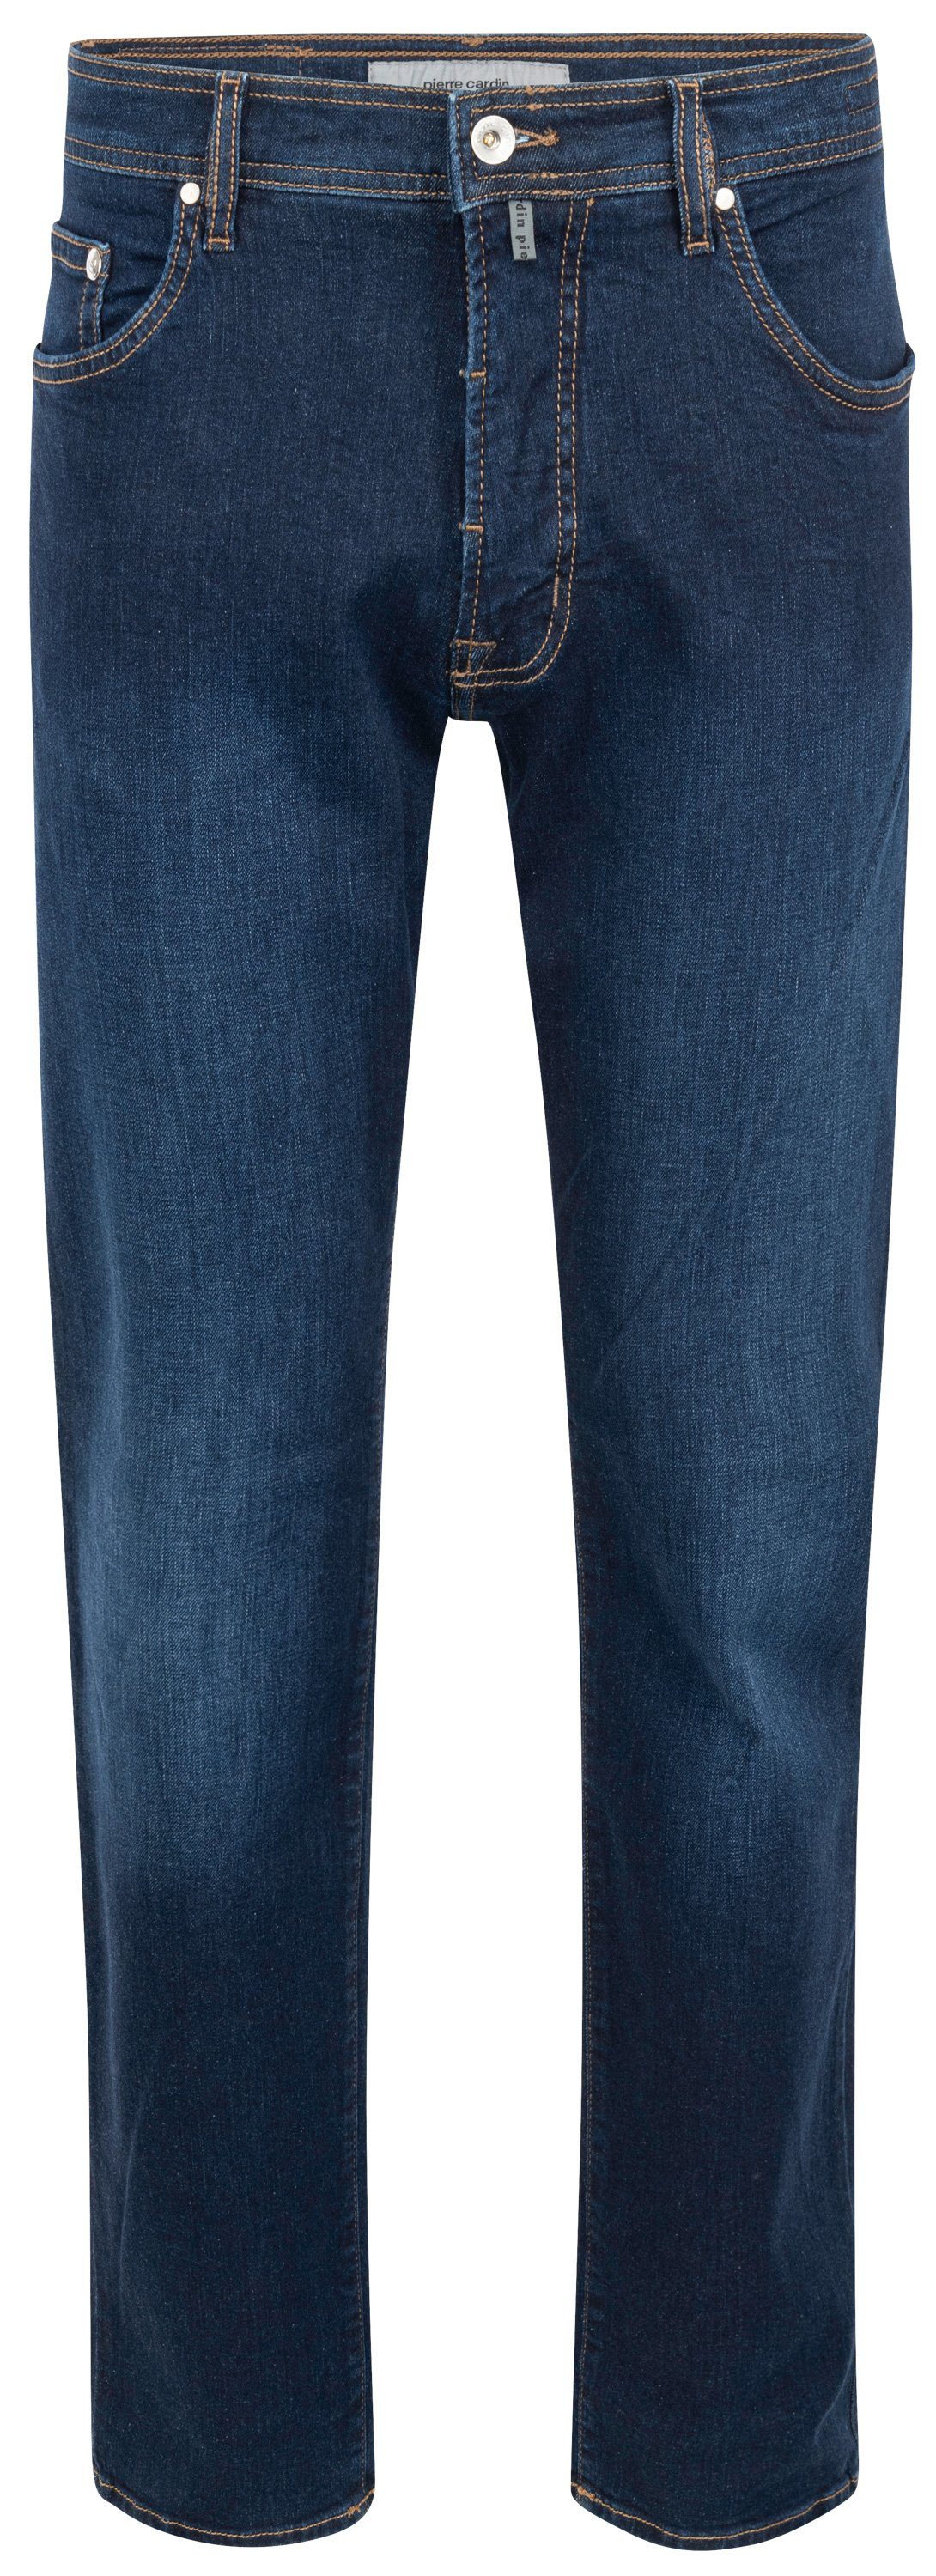 Pierre Cardin 5-Pocket-Jeans PIERRE 31960 7106.6814 DEAUVILLE dark CARDIN buffies used blue